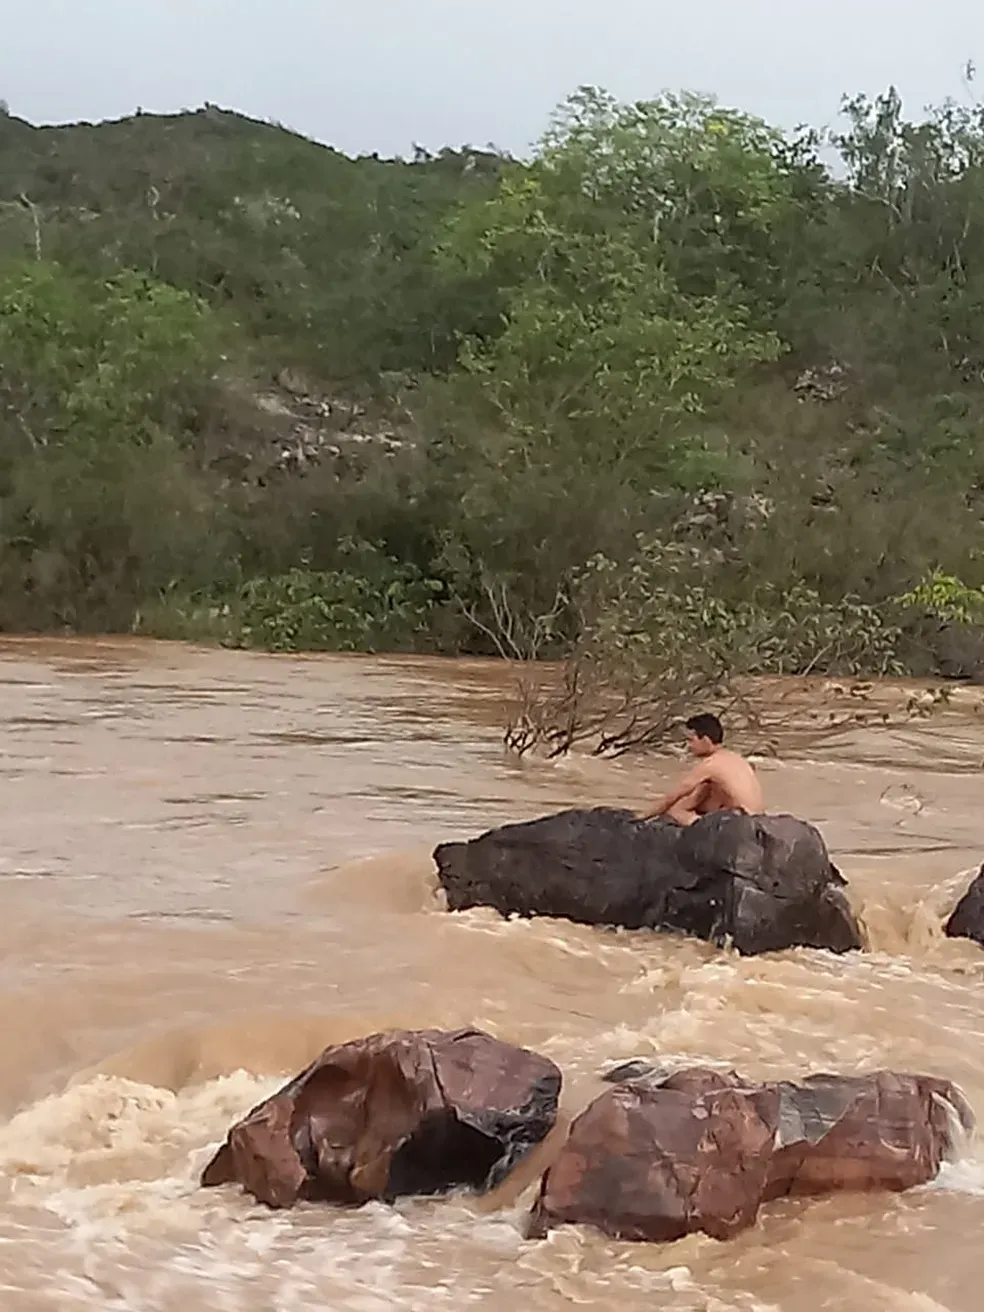 Jovem é resgatado após ficar 3 horas ilhado no meio de rio em Grão Mogol - Redes sociais/divulgação